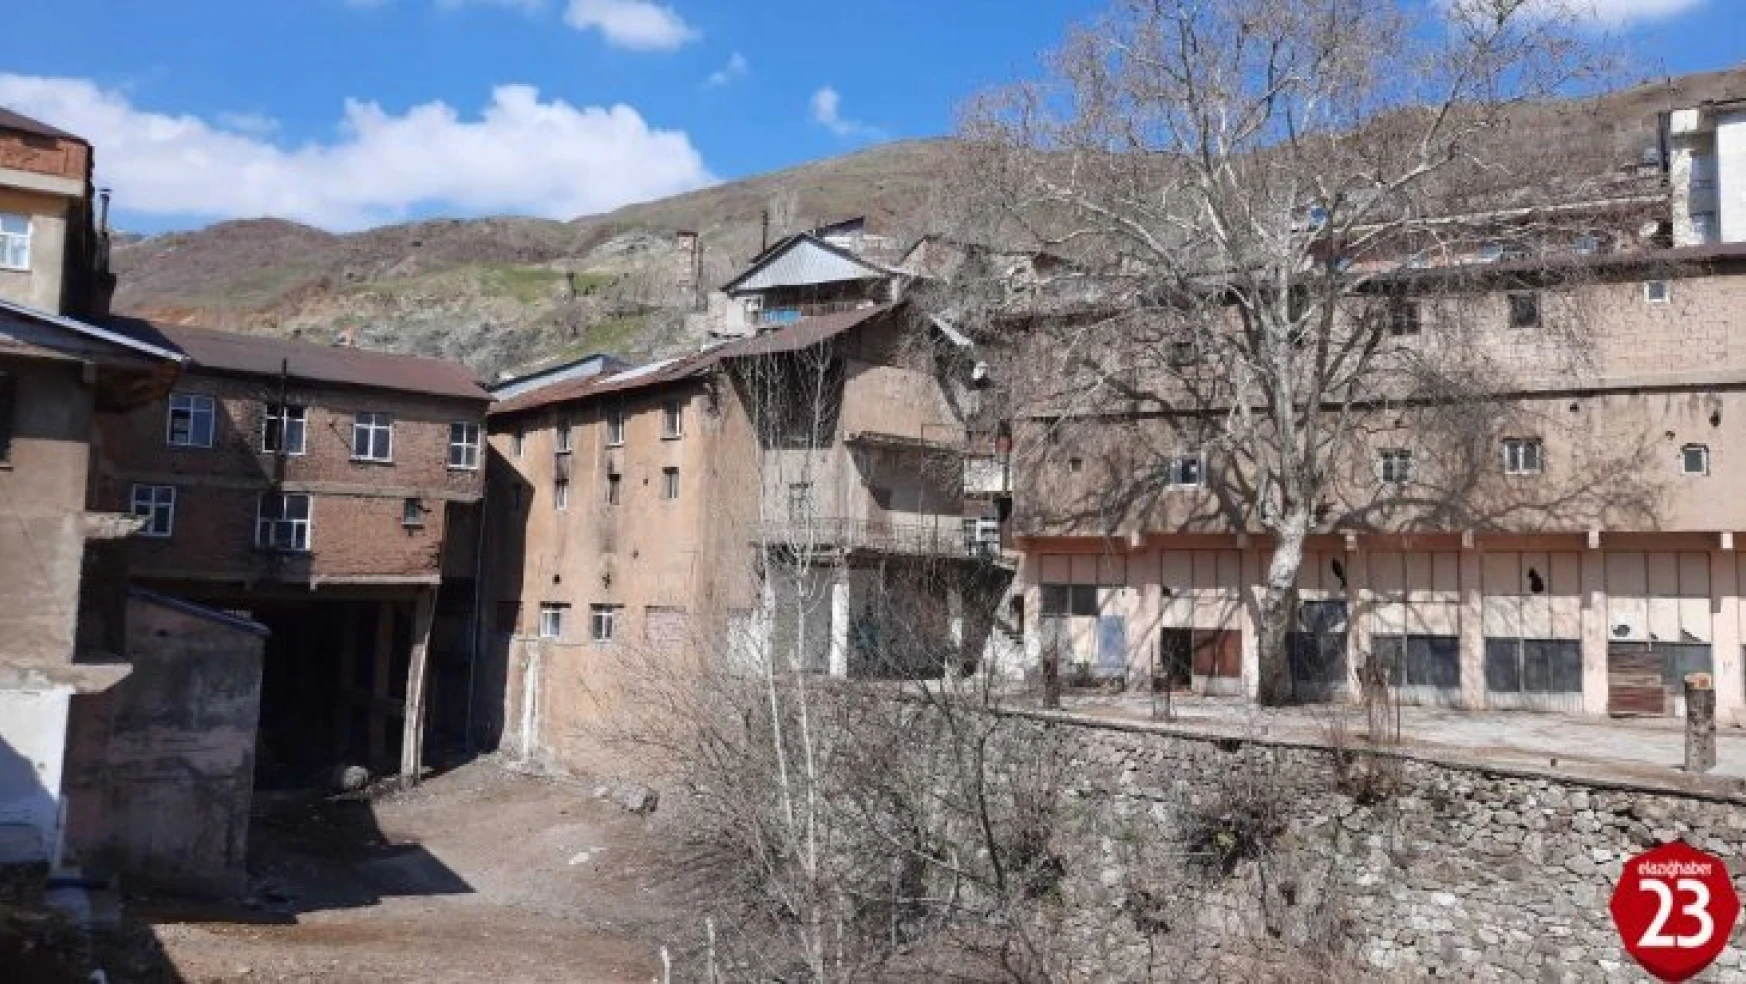 Maden'de Bulunan 115 Yıllık Dua Çınarı Tescillendi